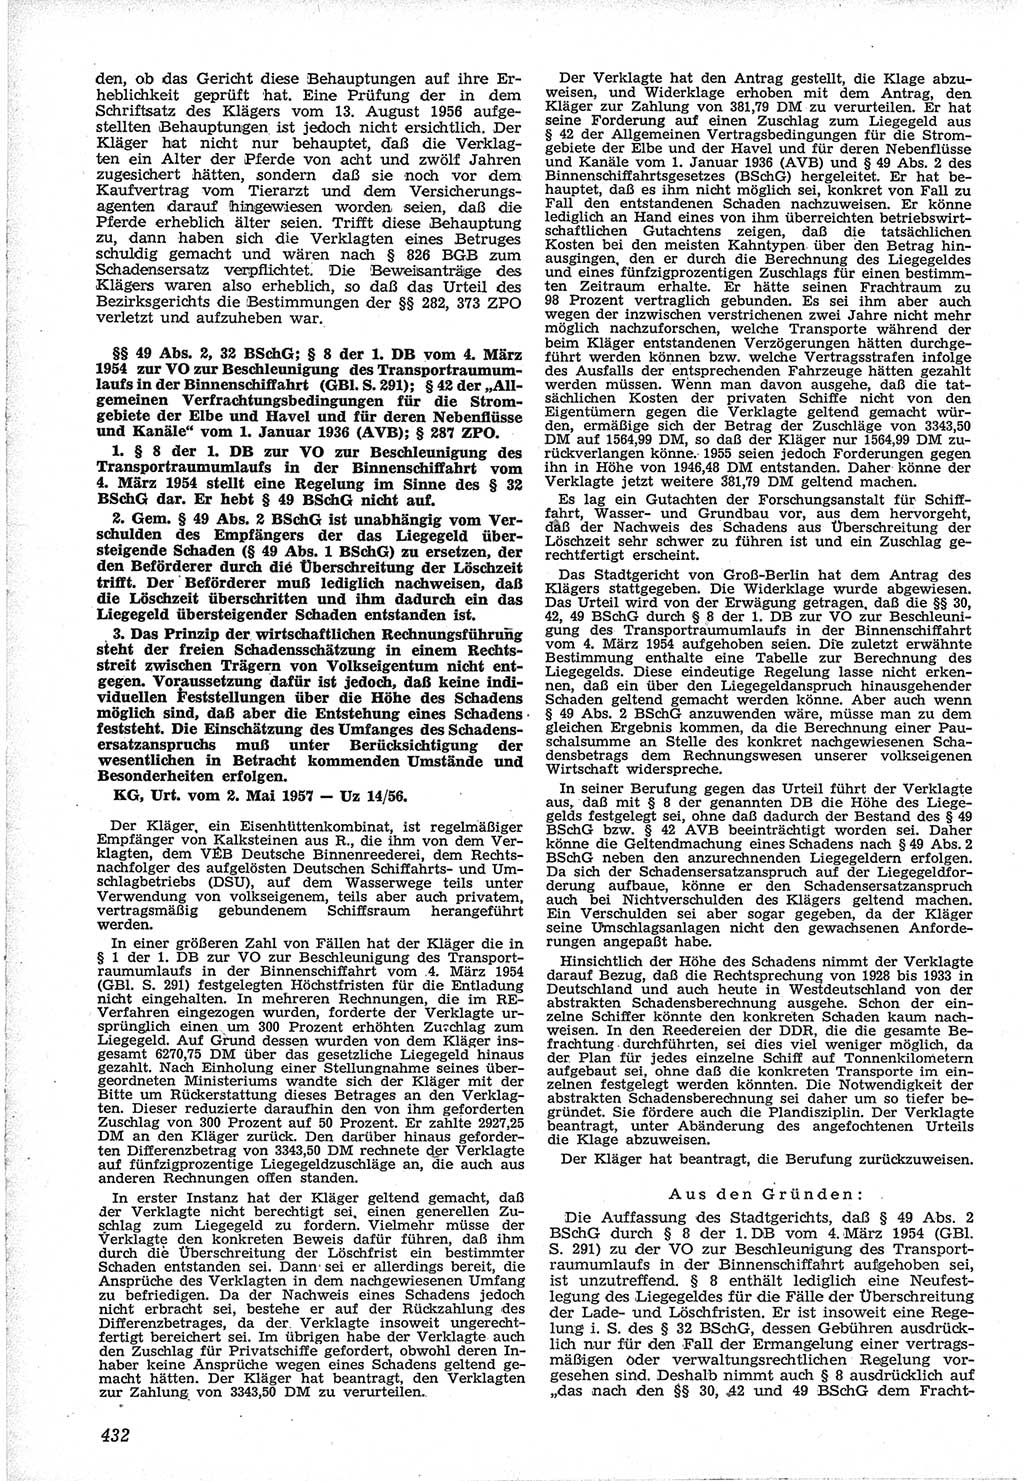 Neue Justiz (NJ), Zeitschrift für Recht und Rechtswissenschaft [Deutsche Demokratische Republik (DDR)], 12. Jahrgang 1958, Seite 432 (NJ DDR 1958, S. 432)